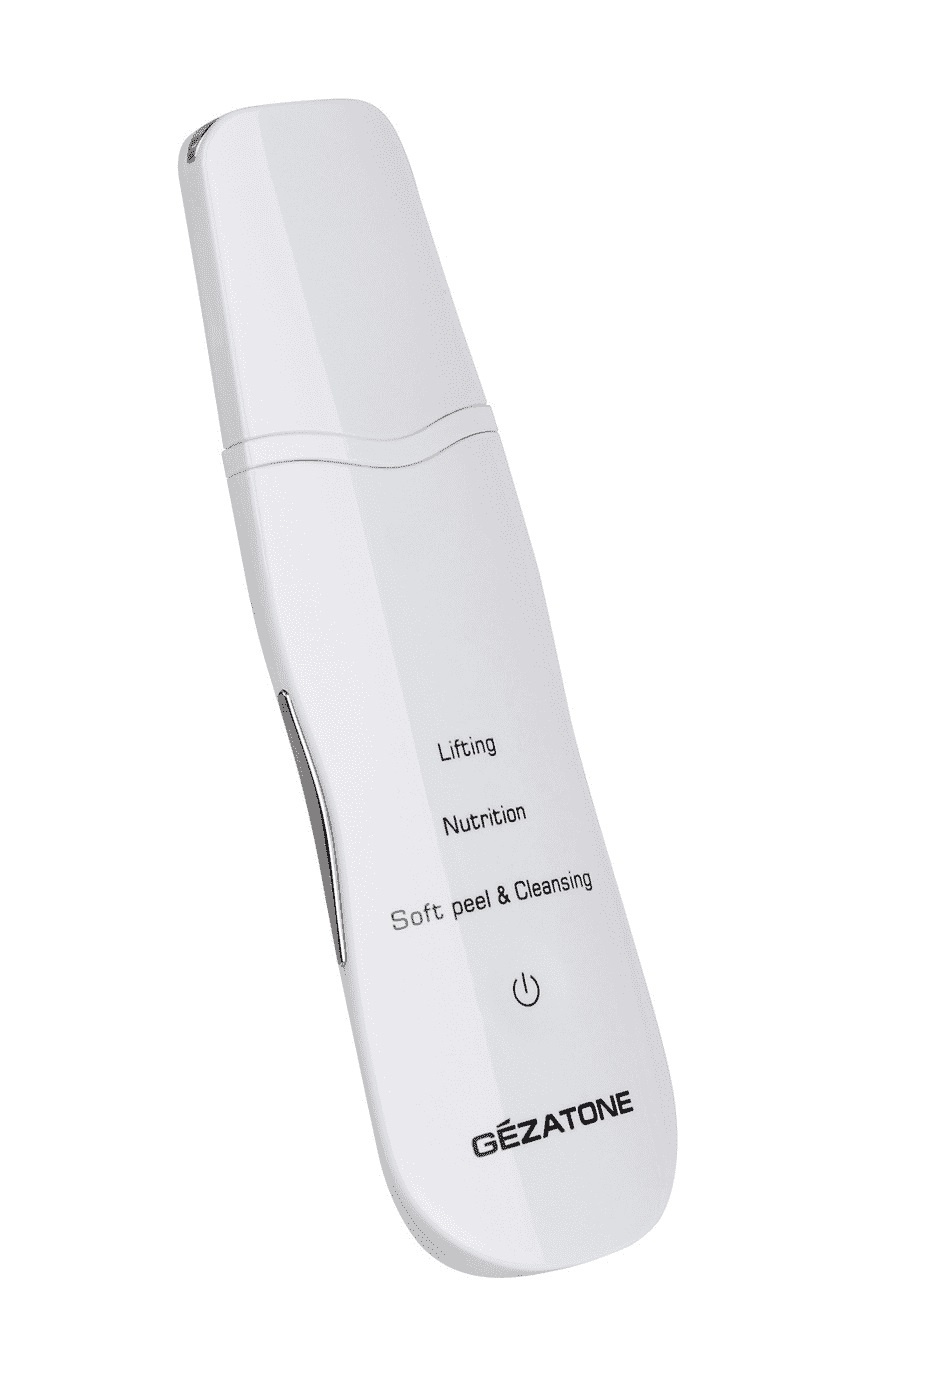 Аппарат для ультразвуковой чистки лица Gezatone BON-990 gezatone аппарат для ультразвуковой чистки и лифтинга bio sonic 770s